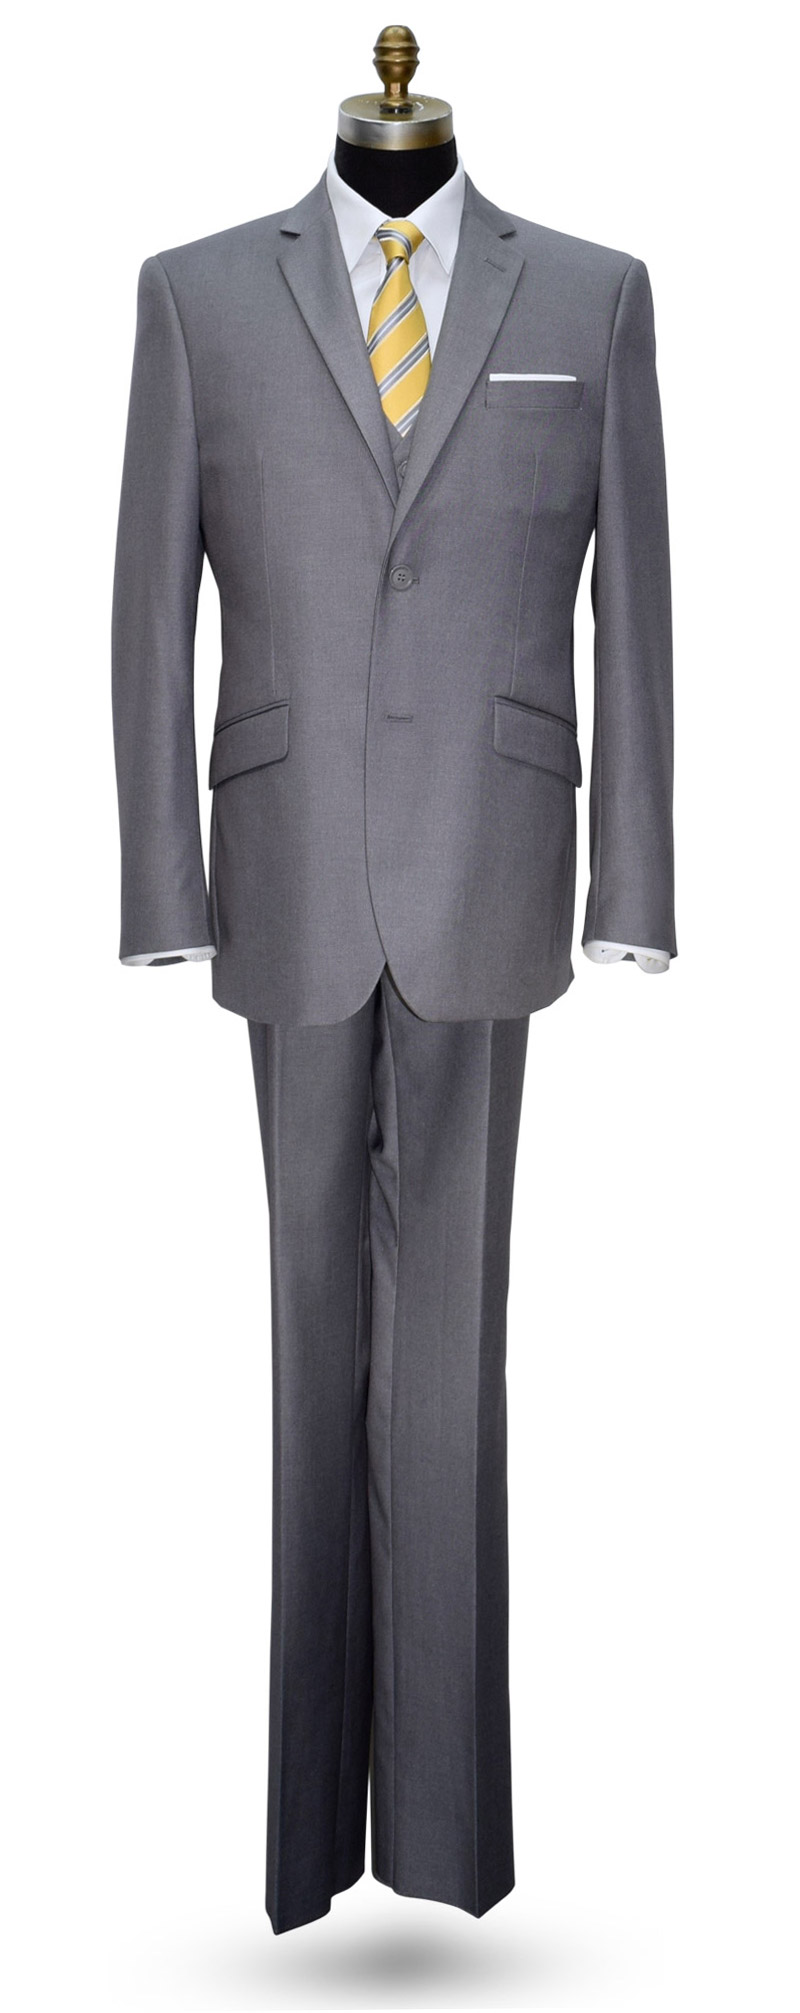 Men's Medium to Light Gray 3 Piece Slim Fit Suit-Coat, Pants and Vest Only